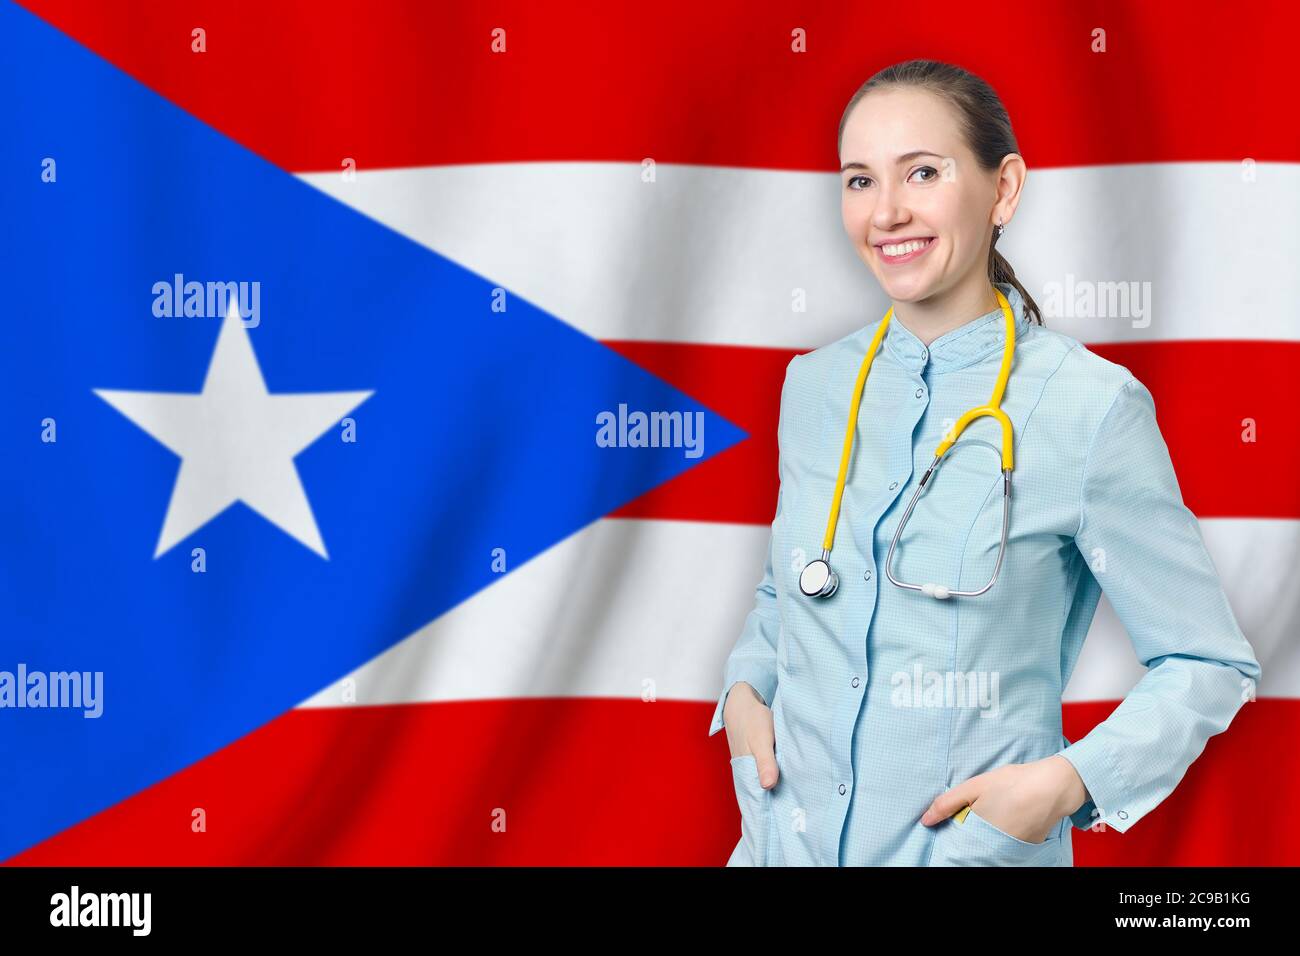 Commonwealth von Puerto Rico Gesundheitskonzept mit Arzt auf Hintergrund. Krankenversicherung, Arbeit oder Studium im Land Stockfoto